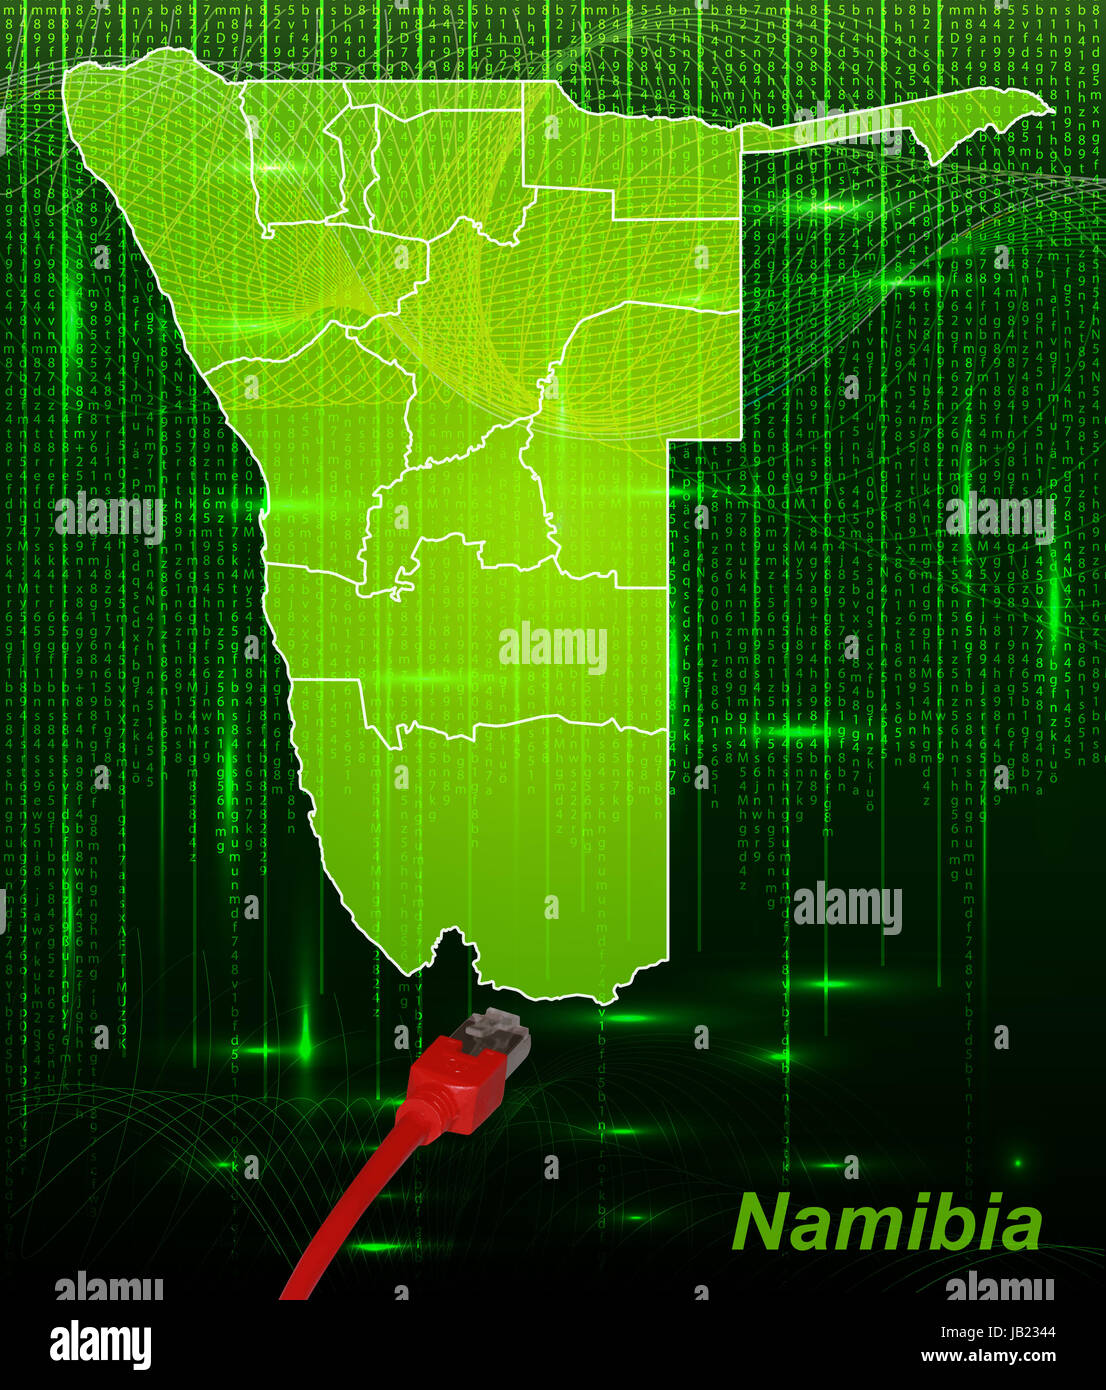 Namibia in  Afrika als Grenzkarte mit Grenzen in dem neuen Netzwerkdesign. Durch die ansprechende Gestaltung fügt sich die Karte perfekt in Ihr Vorhaben ein. Stock Photo